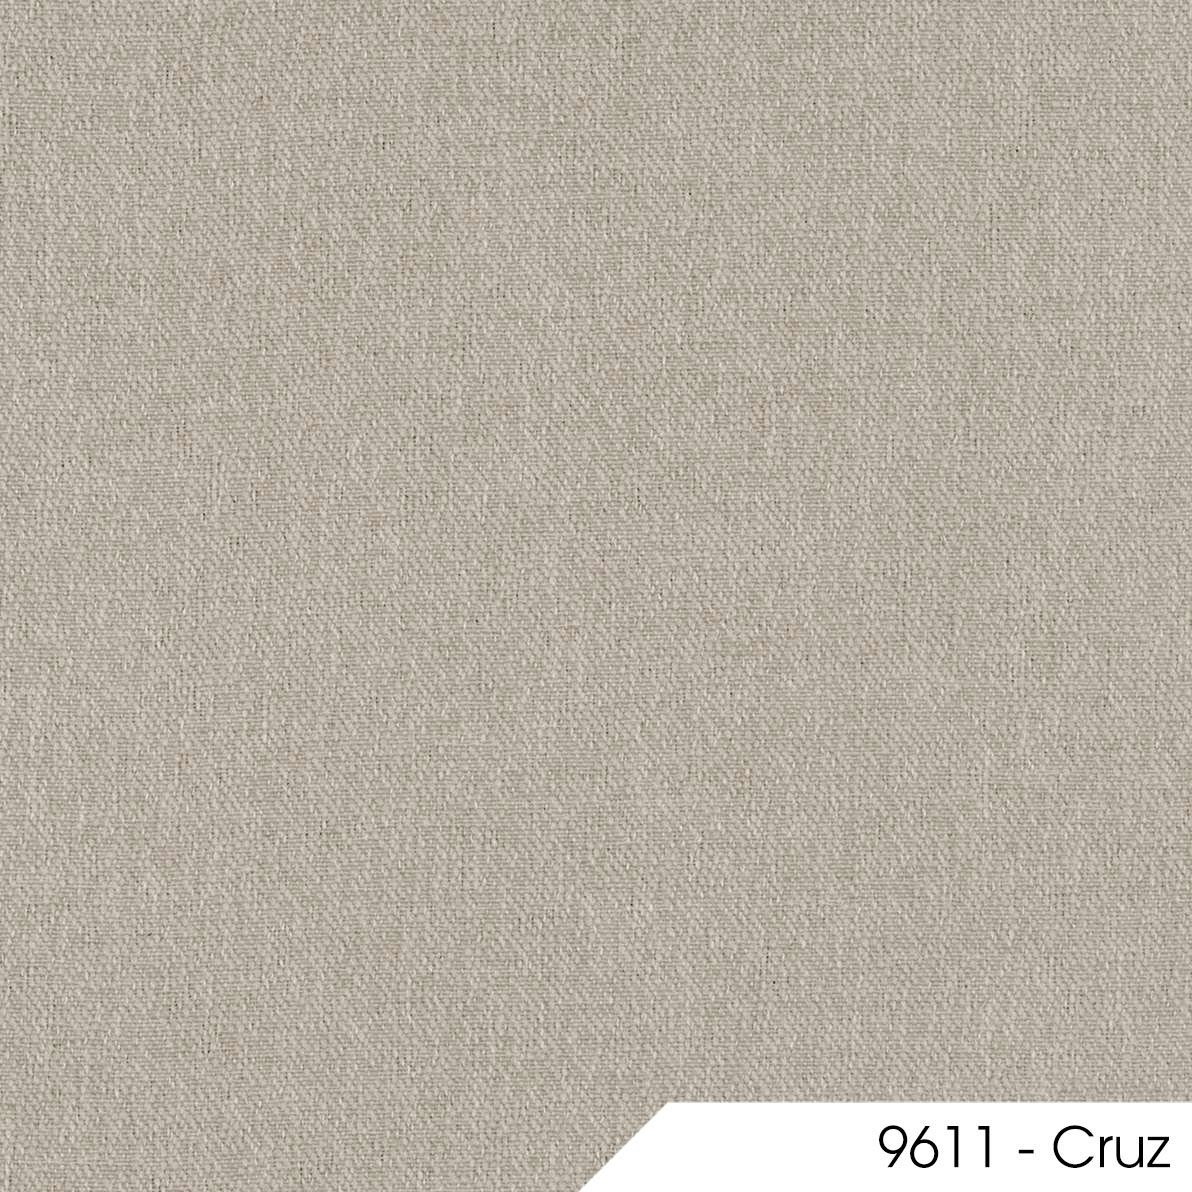 Cruz 9611 1